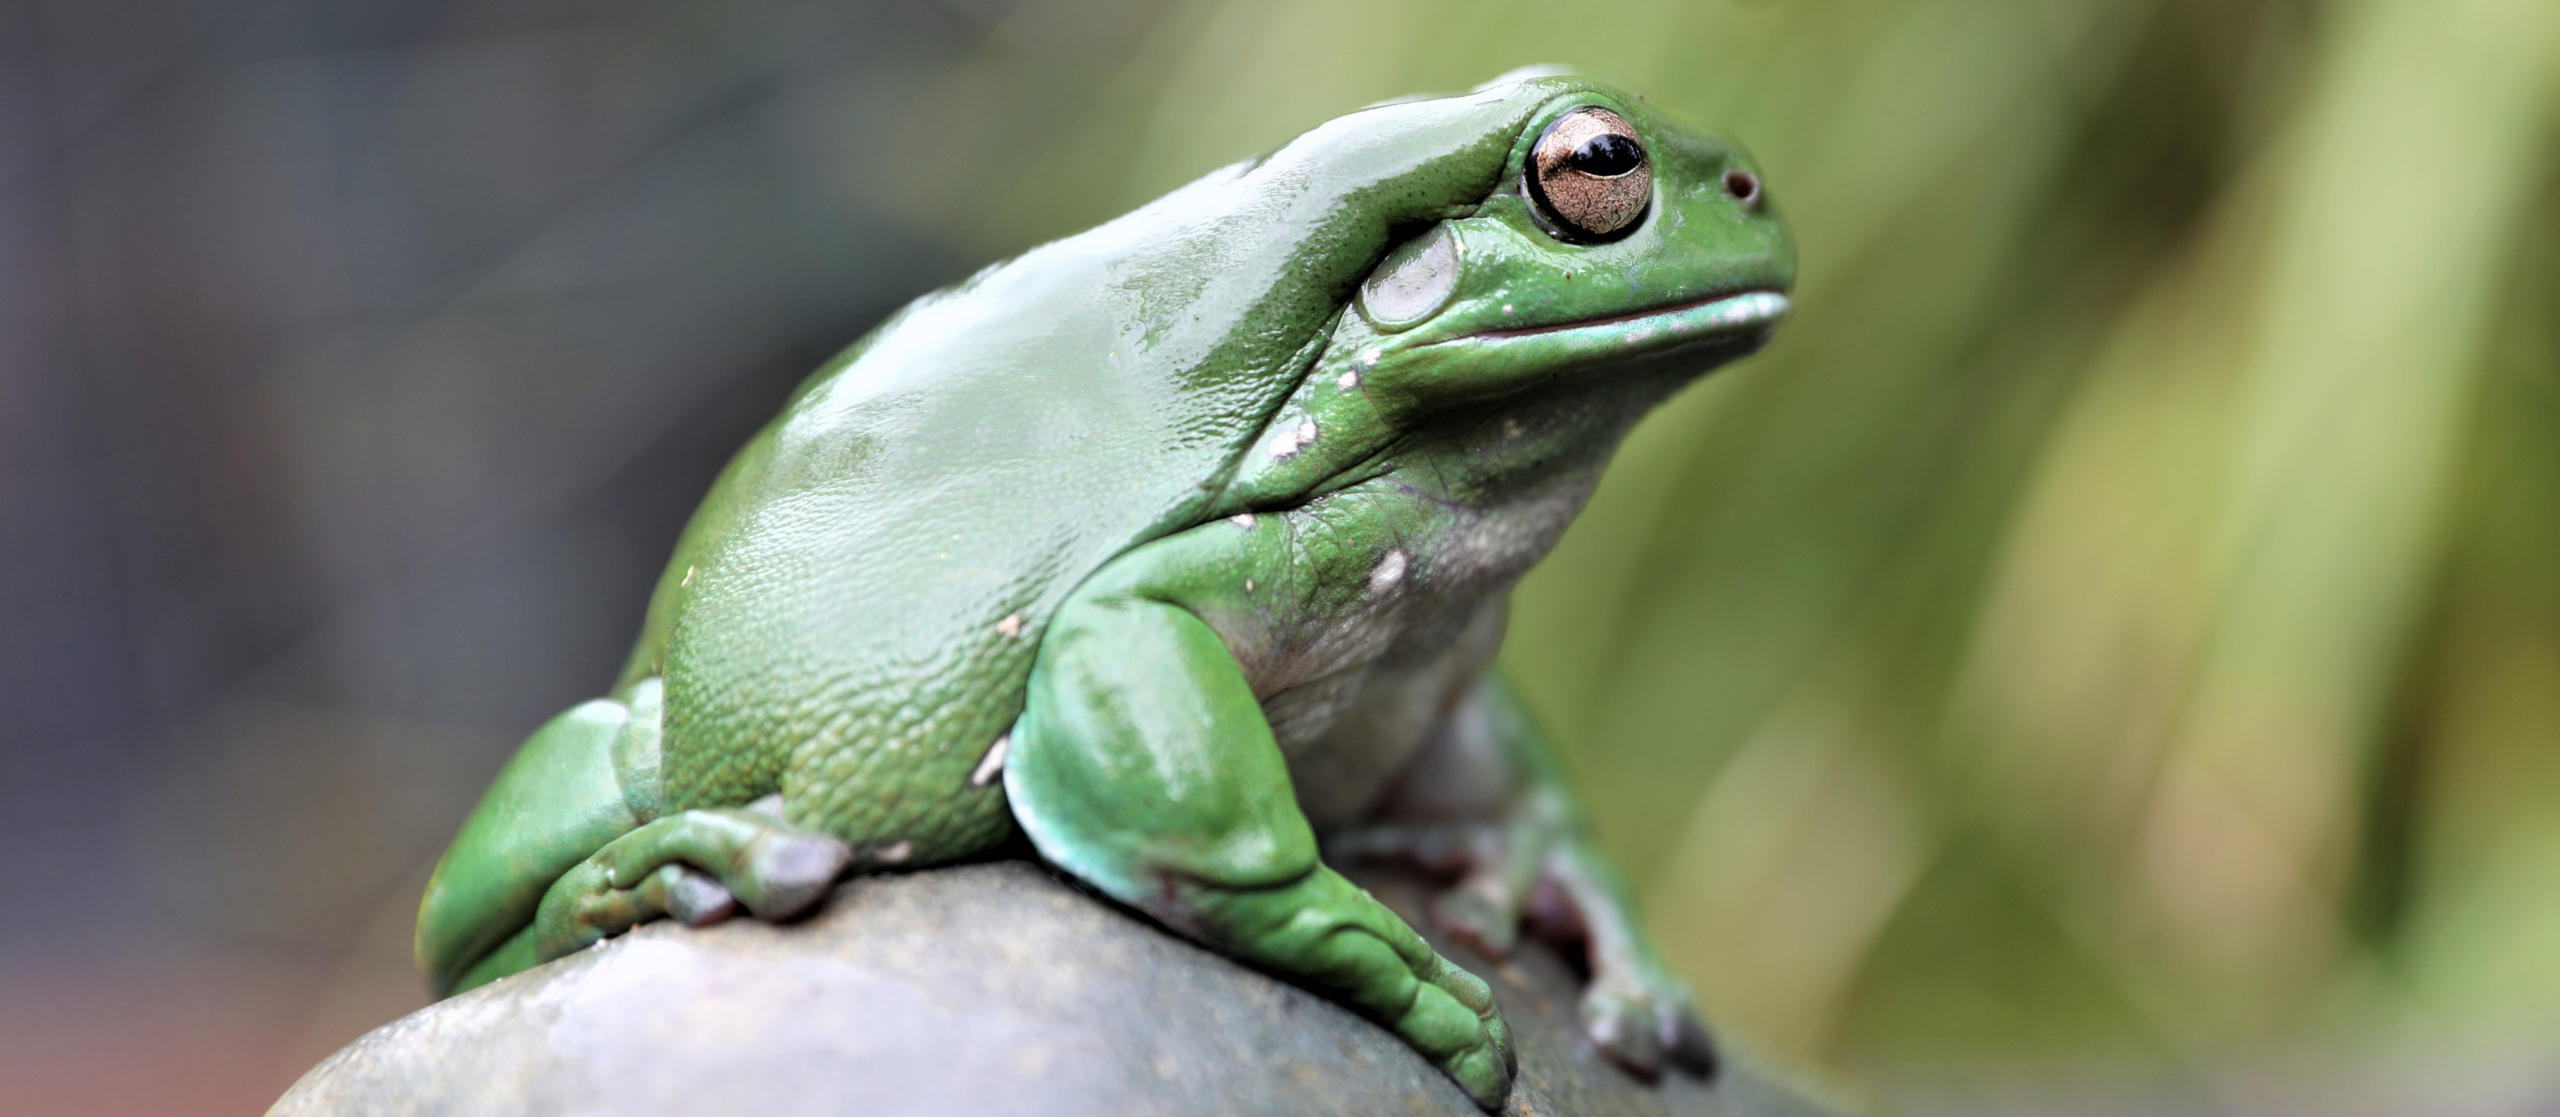 Giant Green Tree Frog Sculptures In Australia